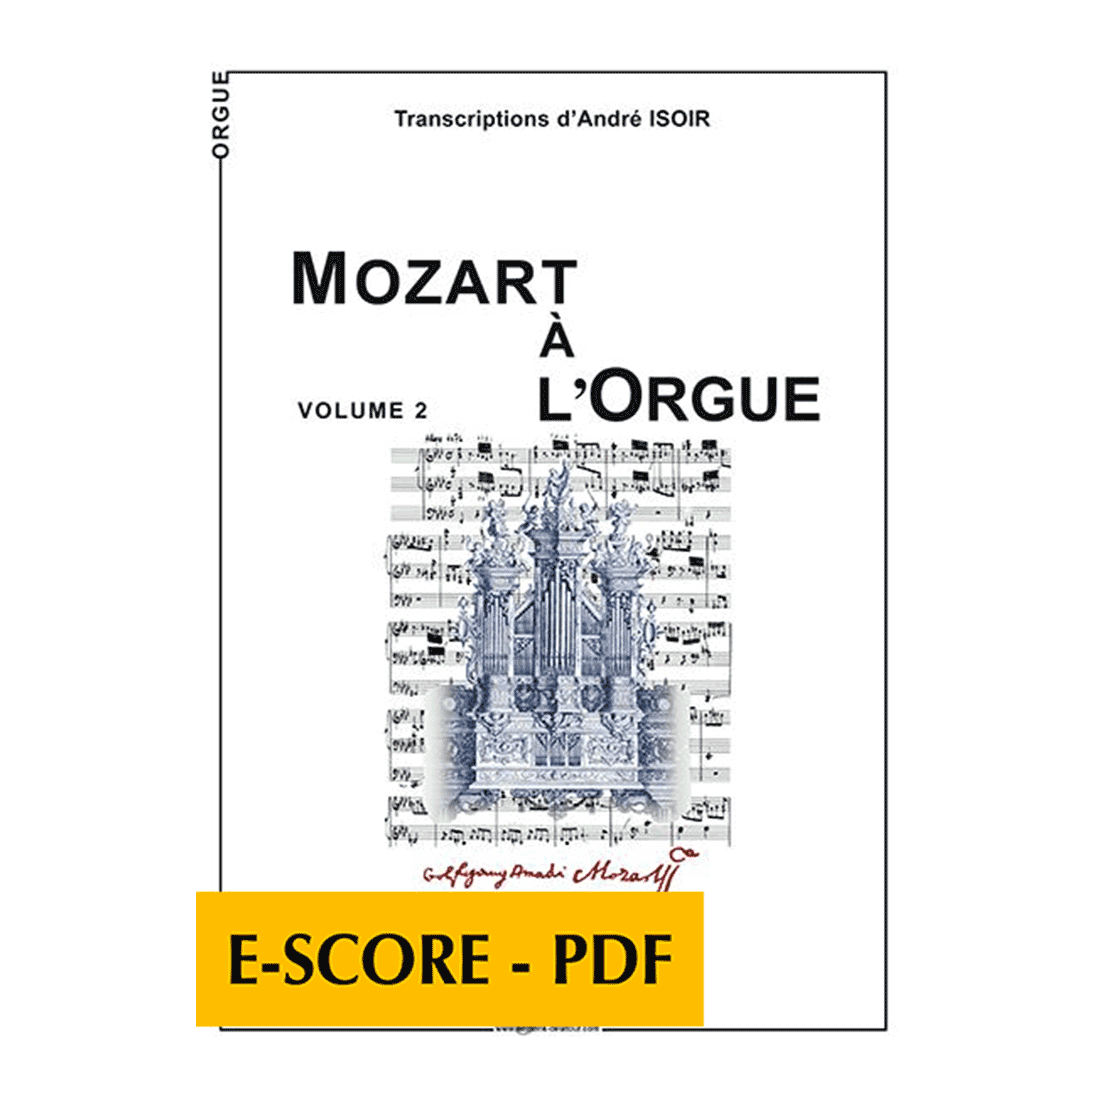 Mozart à l'orgue - Vol. 2 - E-score PDF